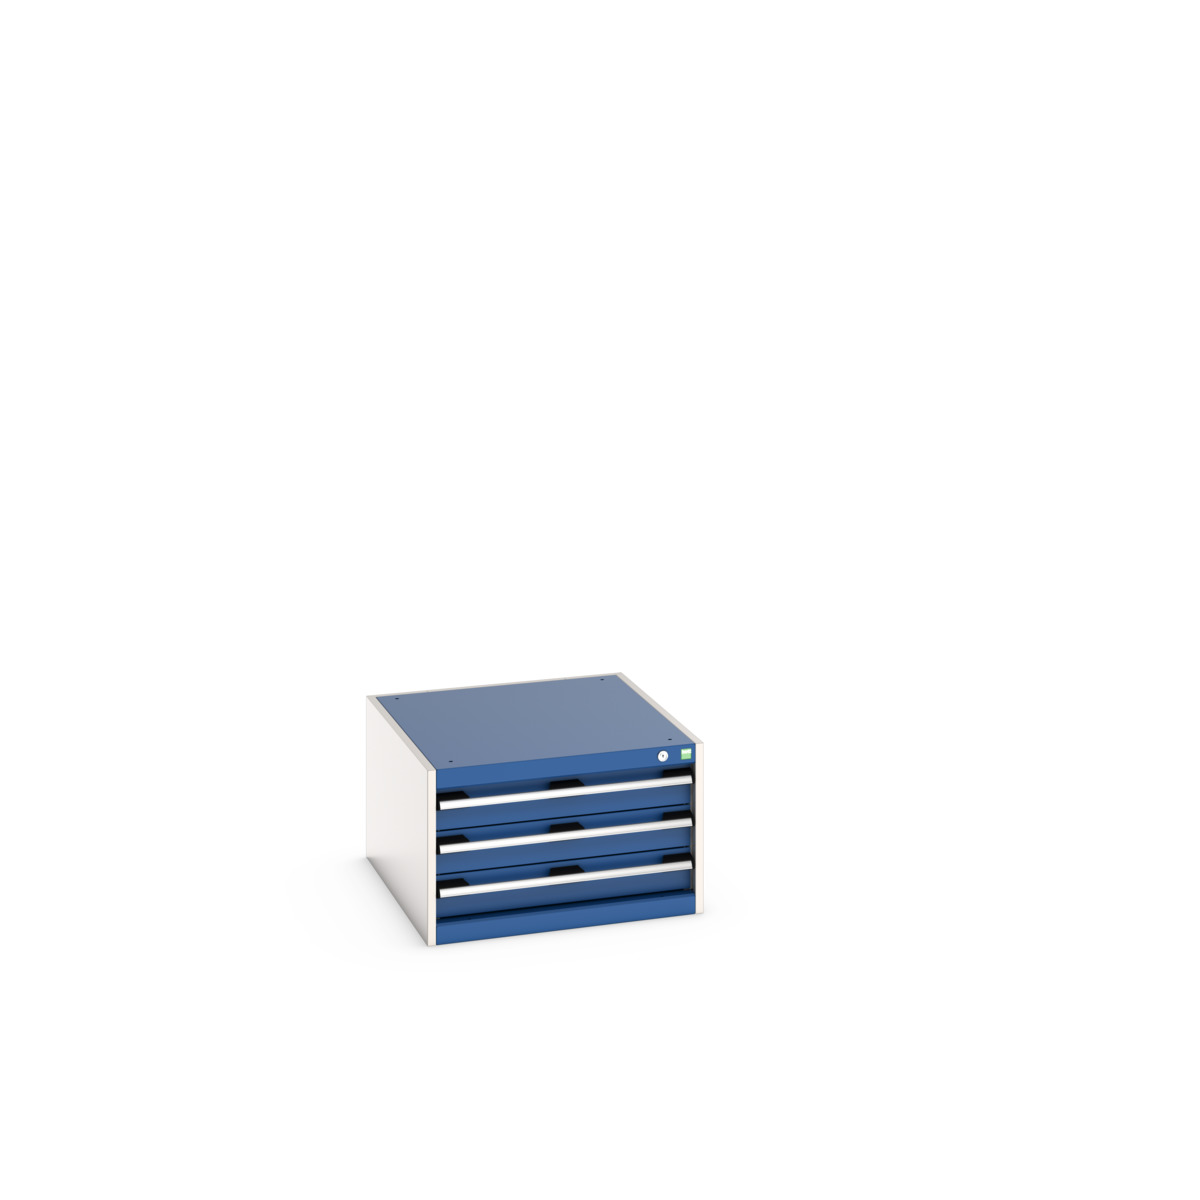 40027096.11V - cubio drawer cabinet